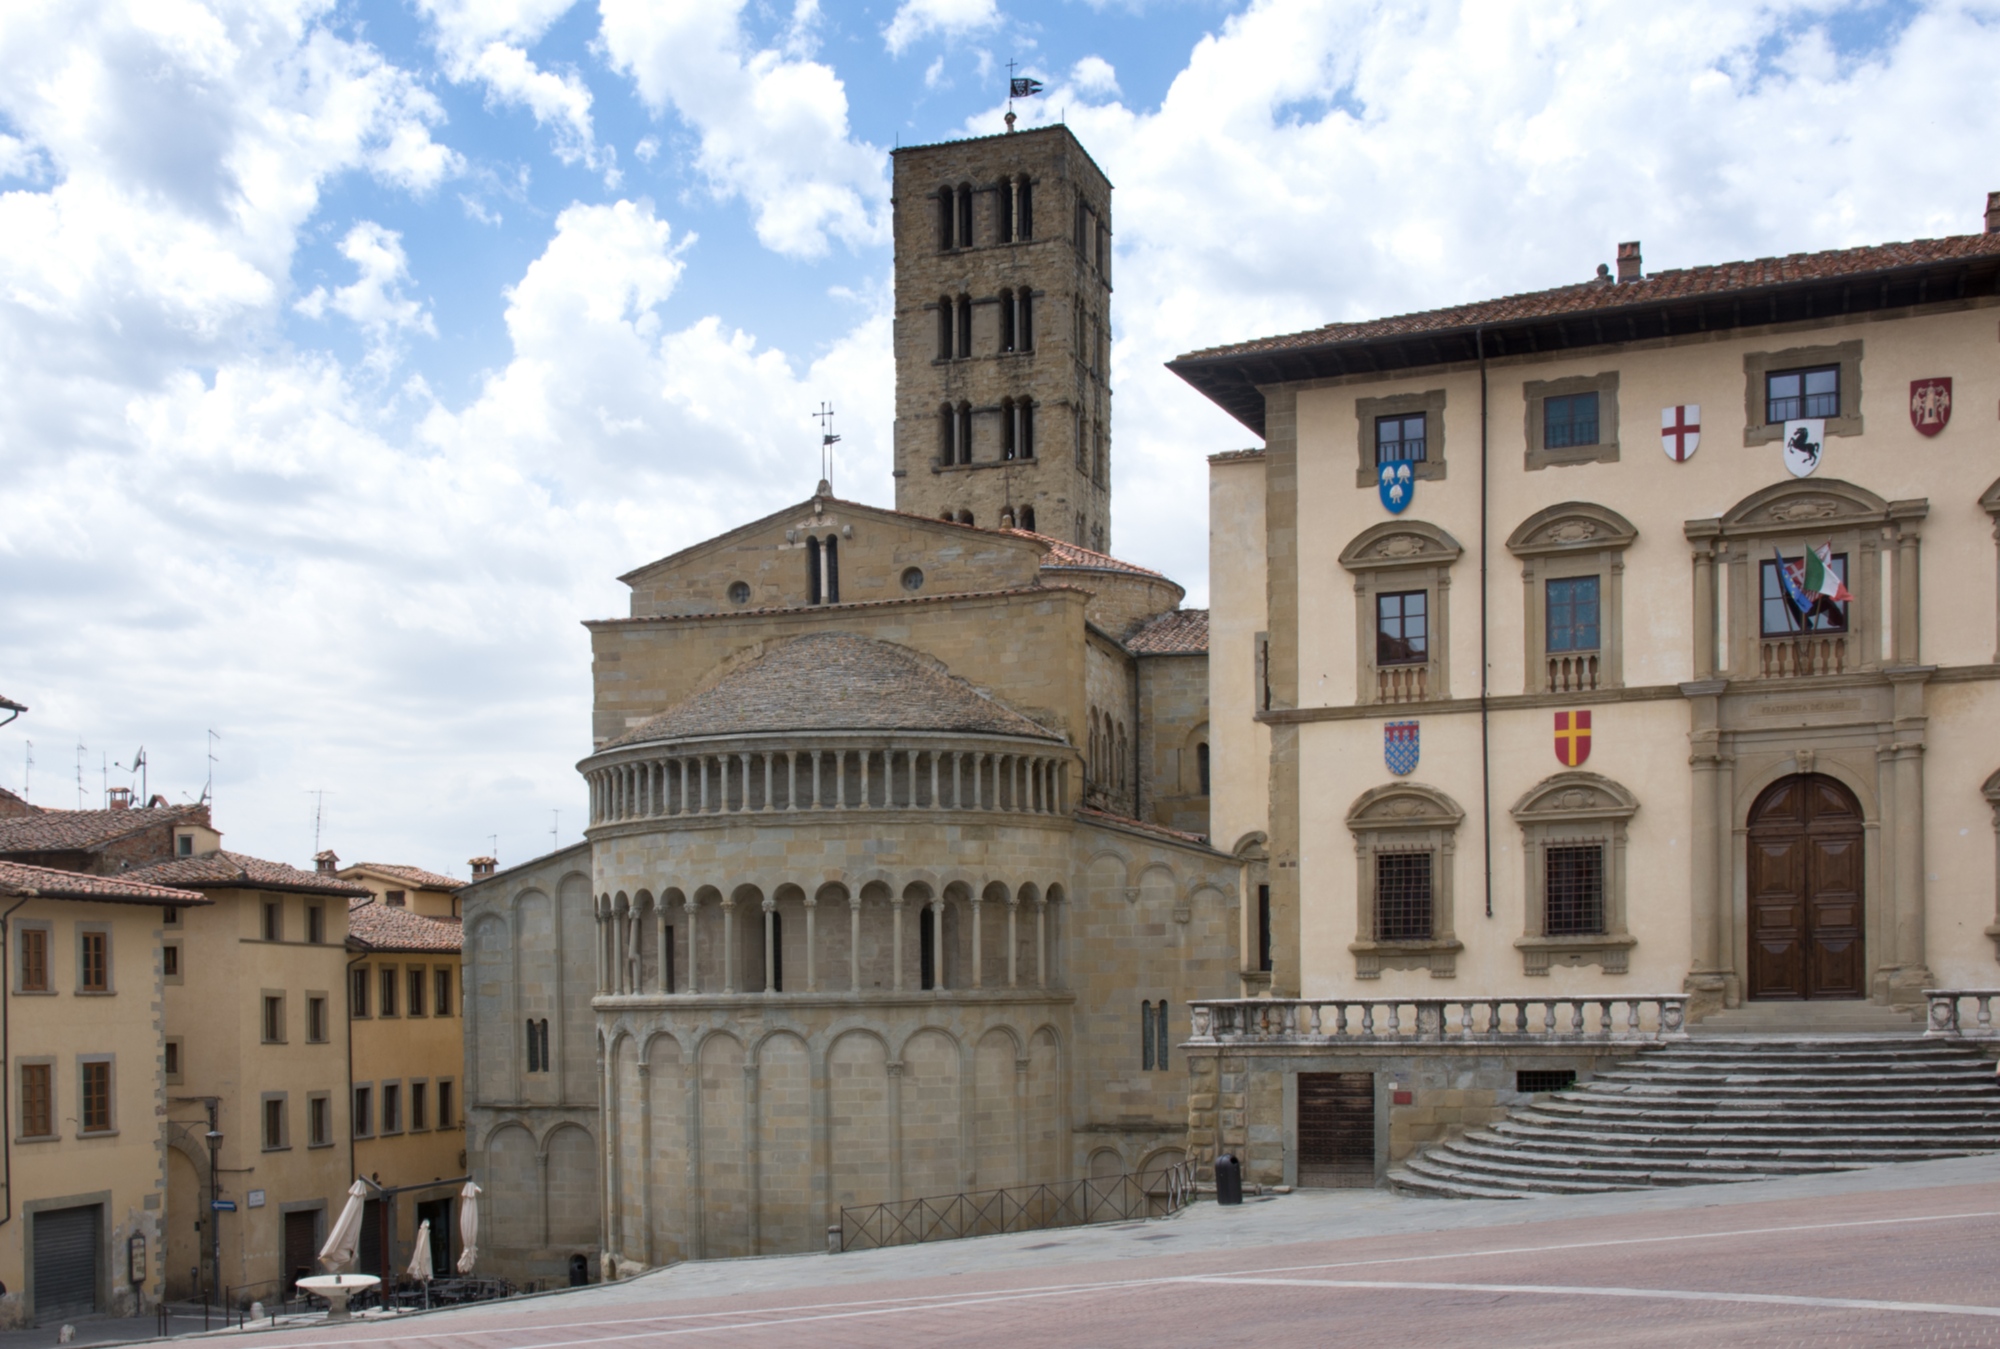 La piazza principale di Arezzo